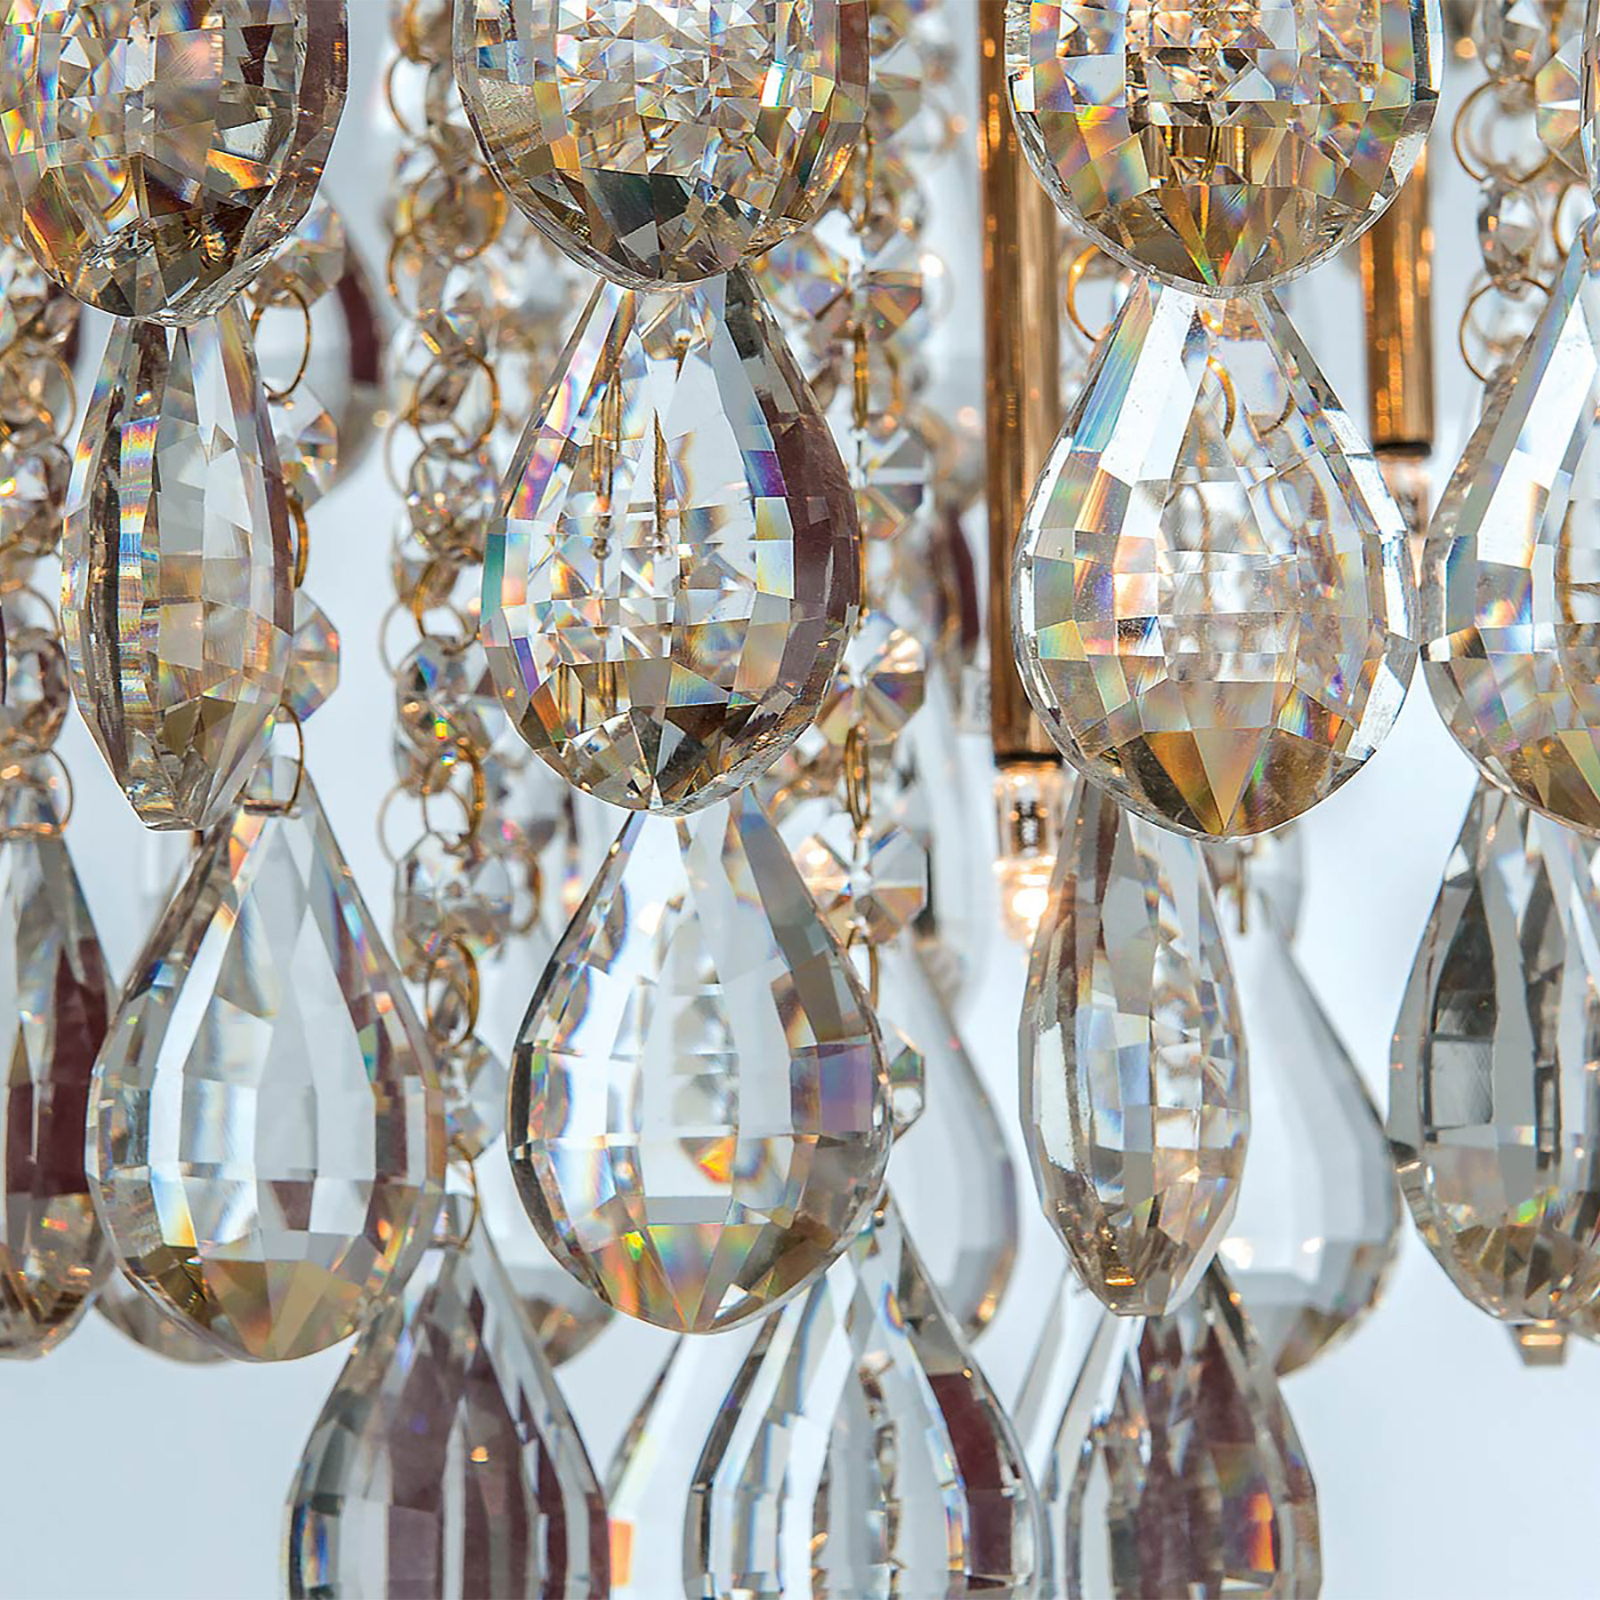 Celeste loftslampe med K9-krystaller, Ø75cm, guld